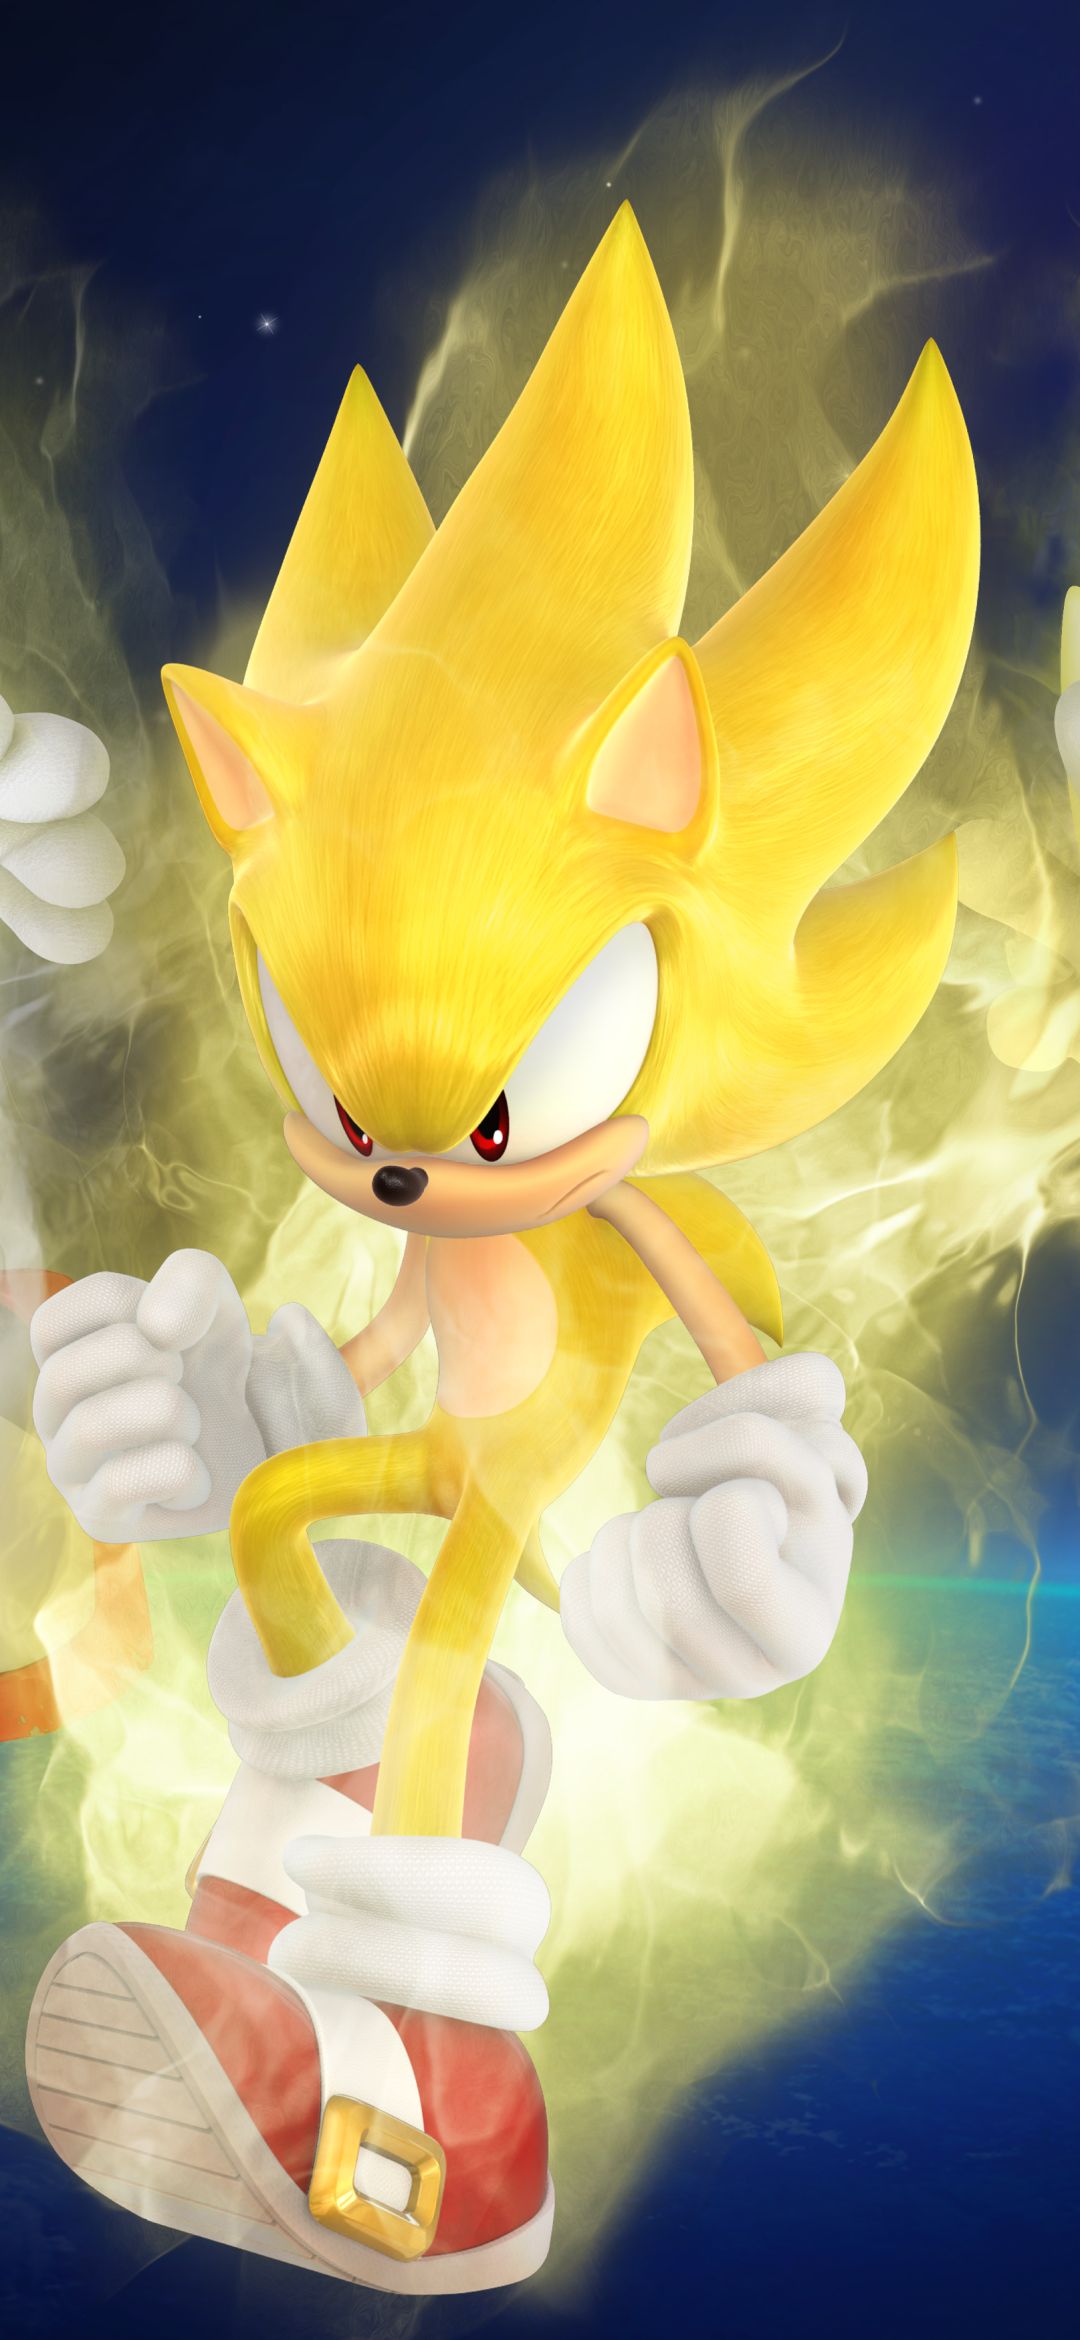 Imagens Sonic para celular